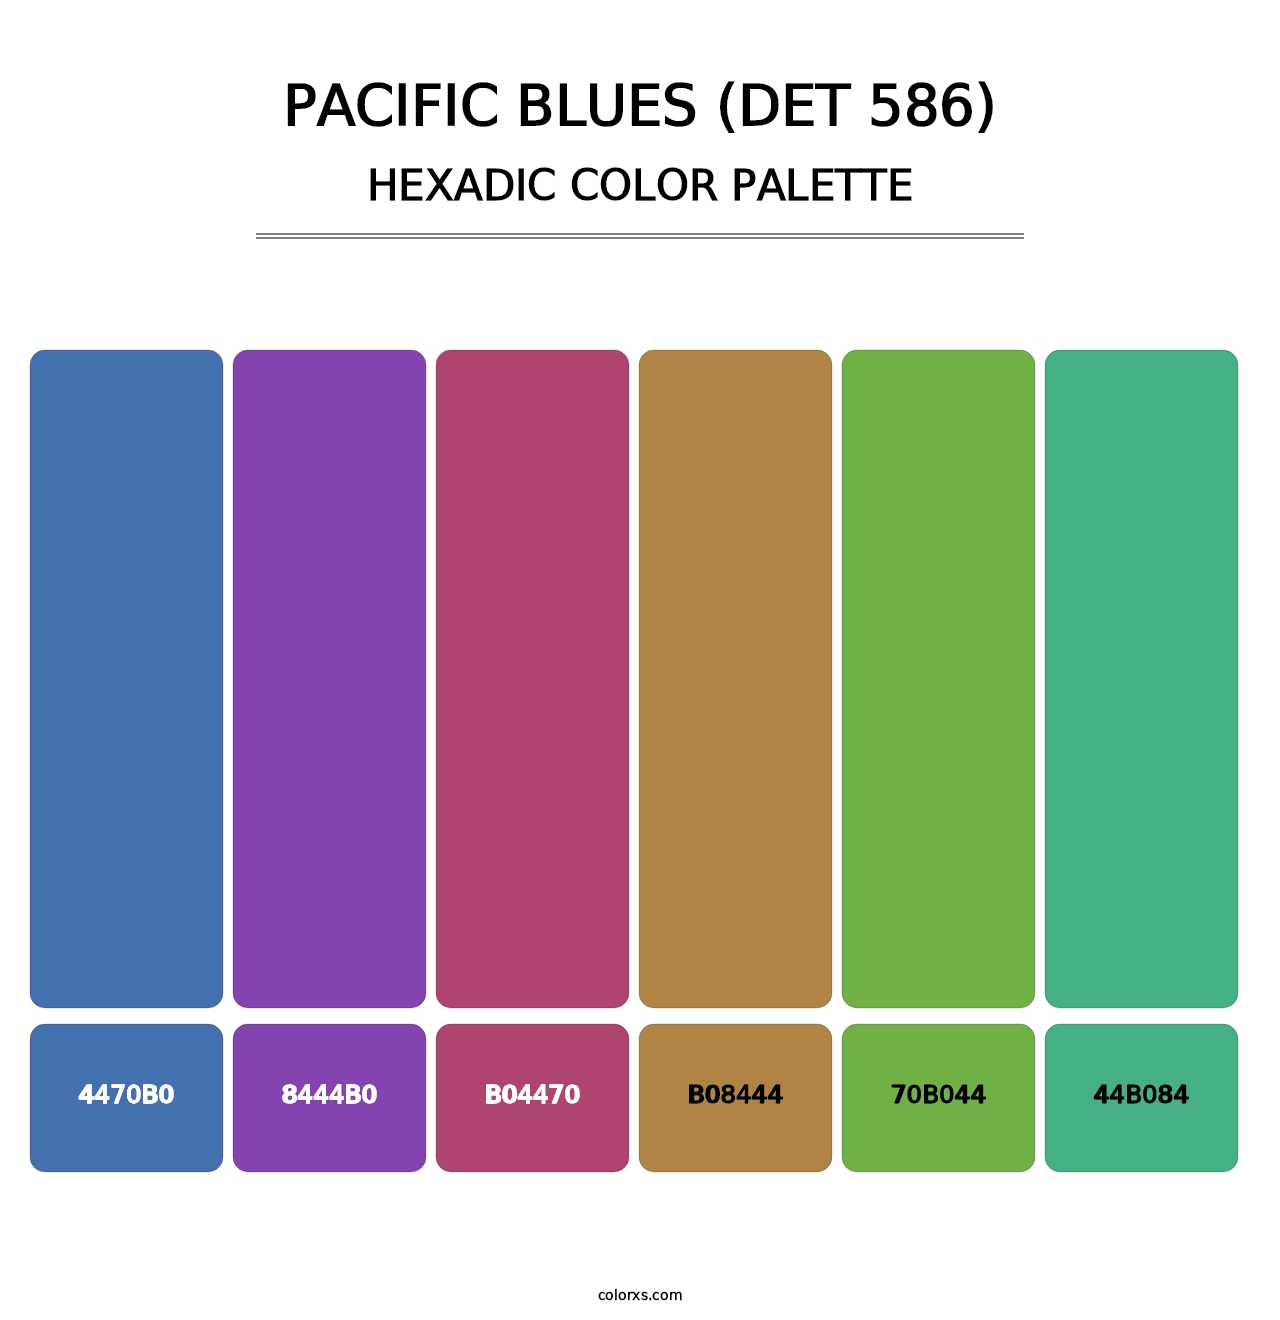 Pacific Blues (DET 586) - Hexadic Color Palette